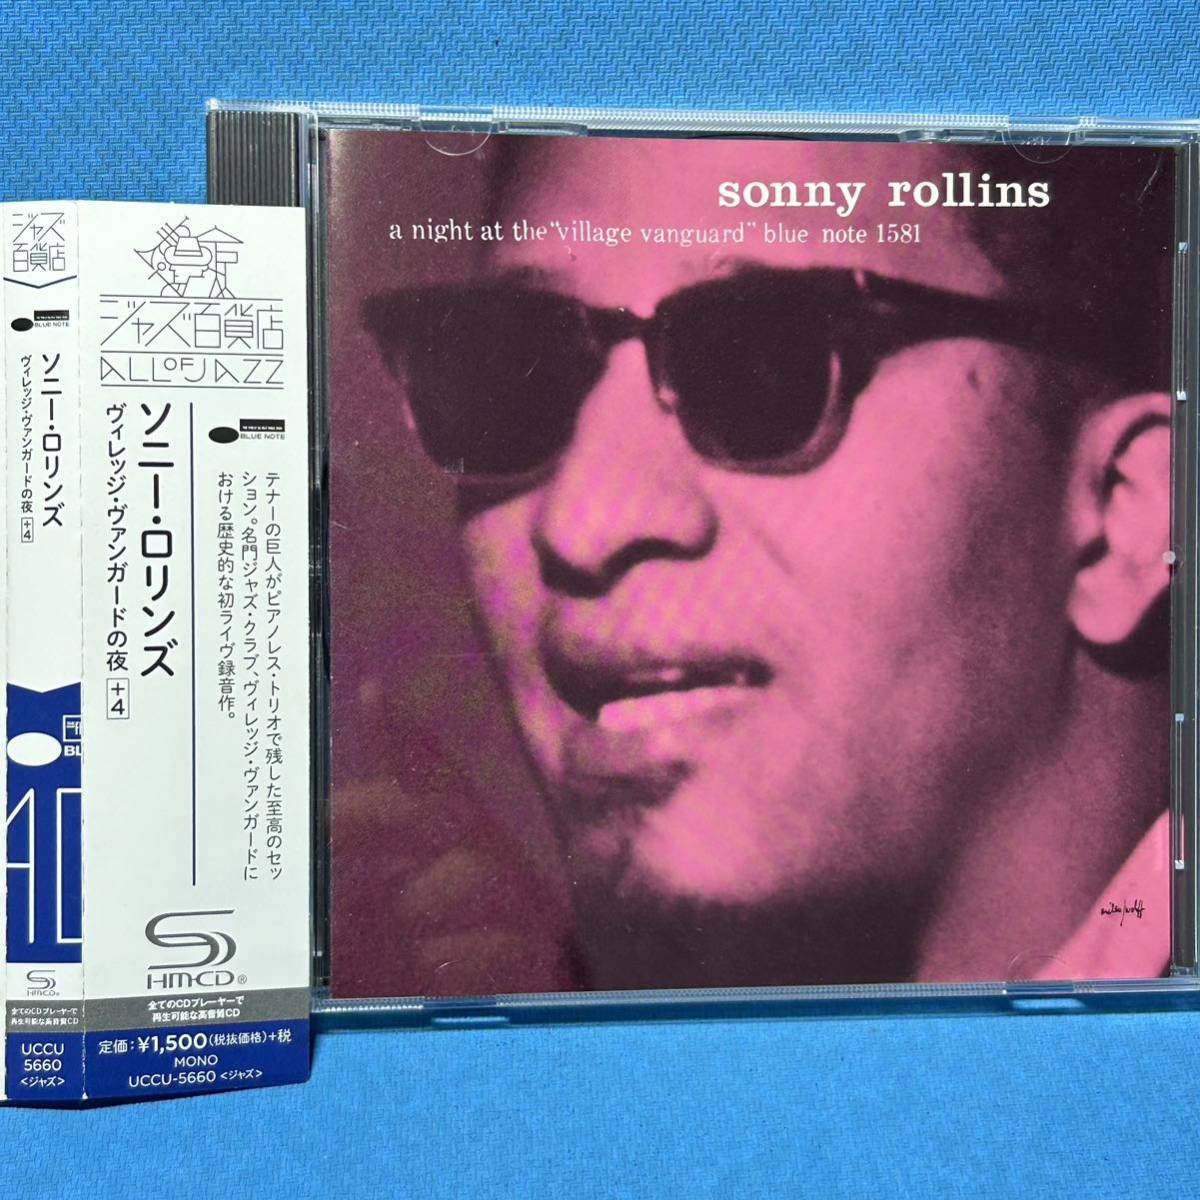 高音質[SHM-CD仕様]★ ソニー・ロリンズ / ヴィレッジ・ヴァンガードの夜[+4] ★ Sonny Rollins / A NIGHT AT THE VILLAGE VANGUARD_画像1